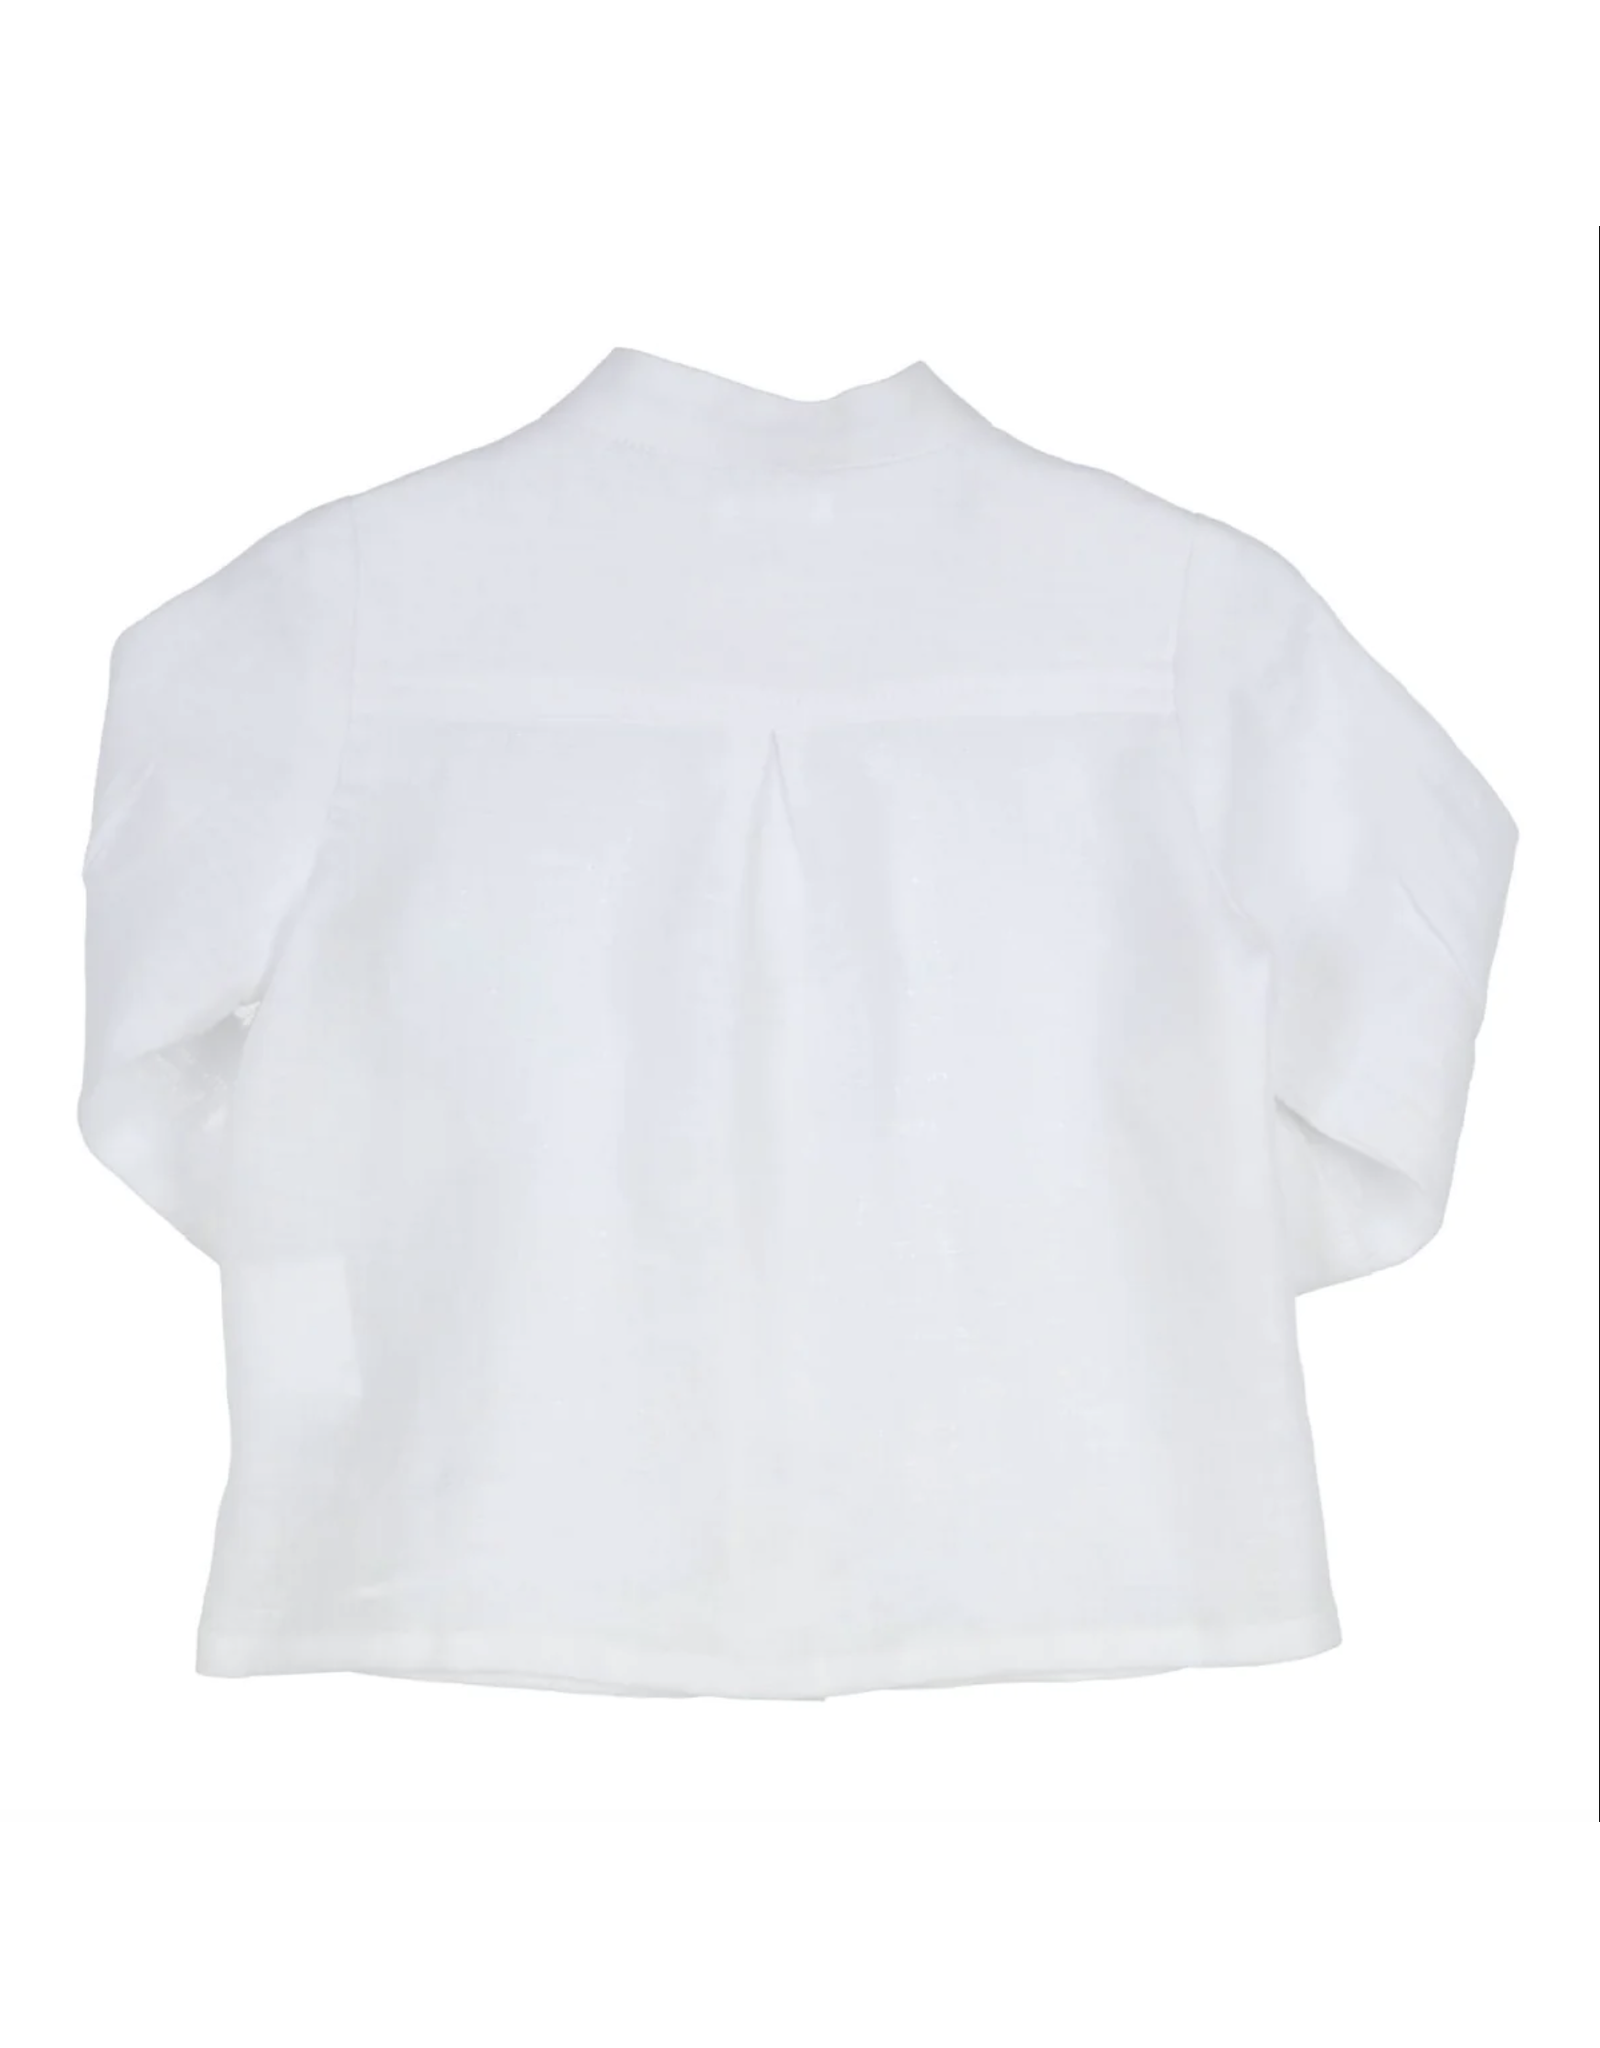 Gymp Shirt Capri White Z24